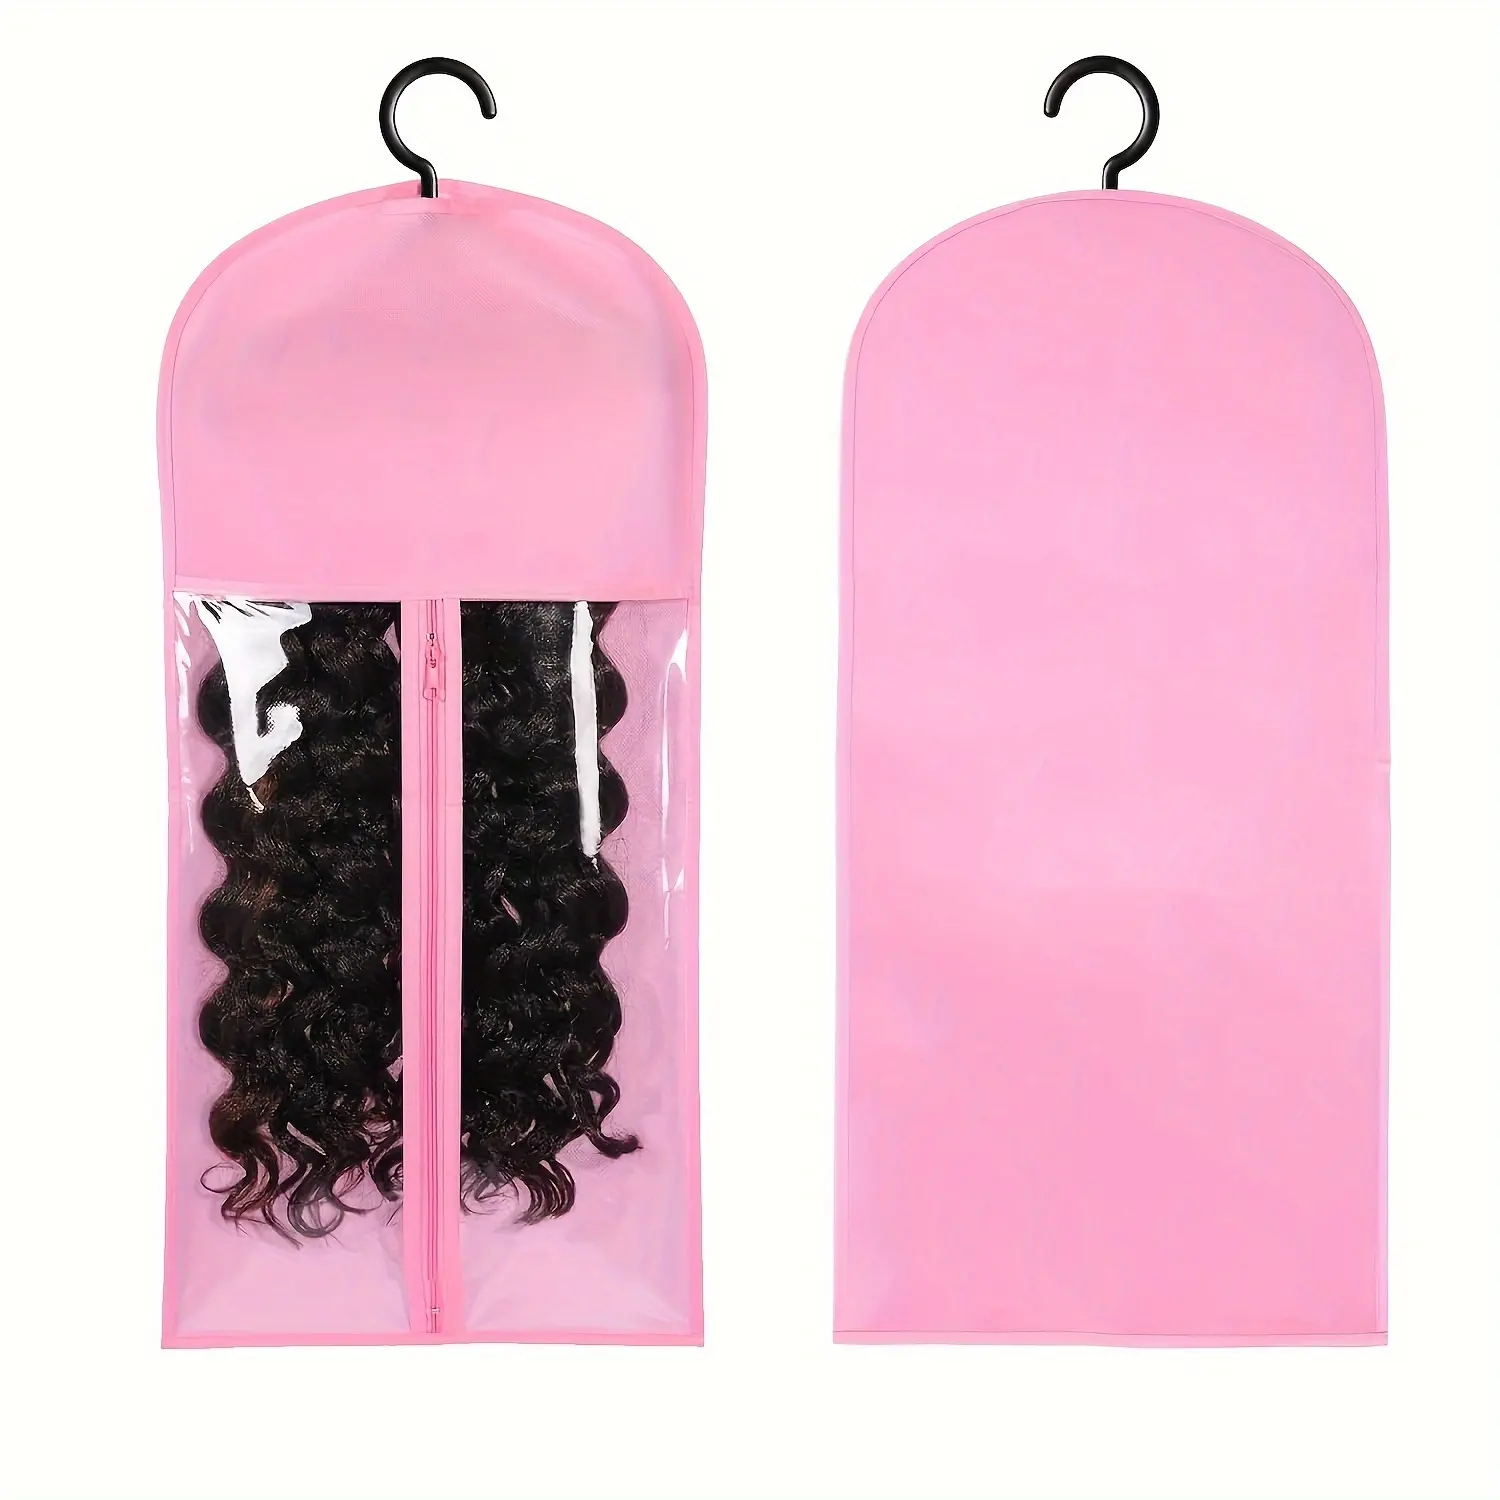 Commercio all'ingrosso di plastica trasparente parrucca porta sacchetti di imballaggio per capelli borsa per capelli borsa di estensione per capelli